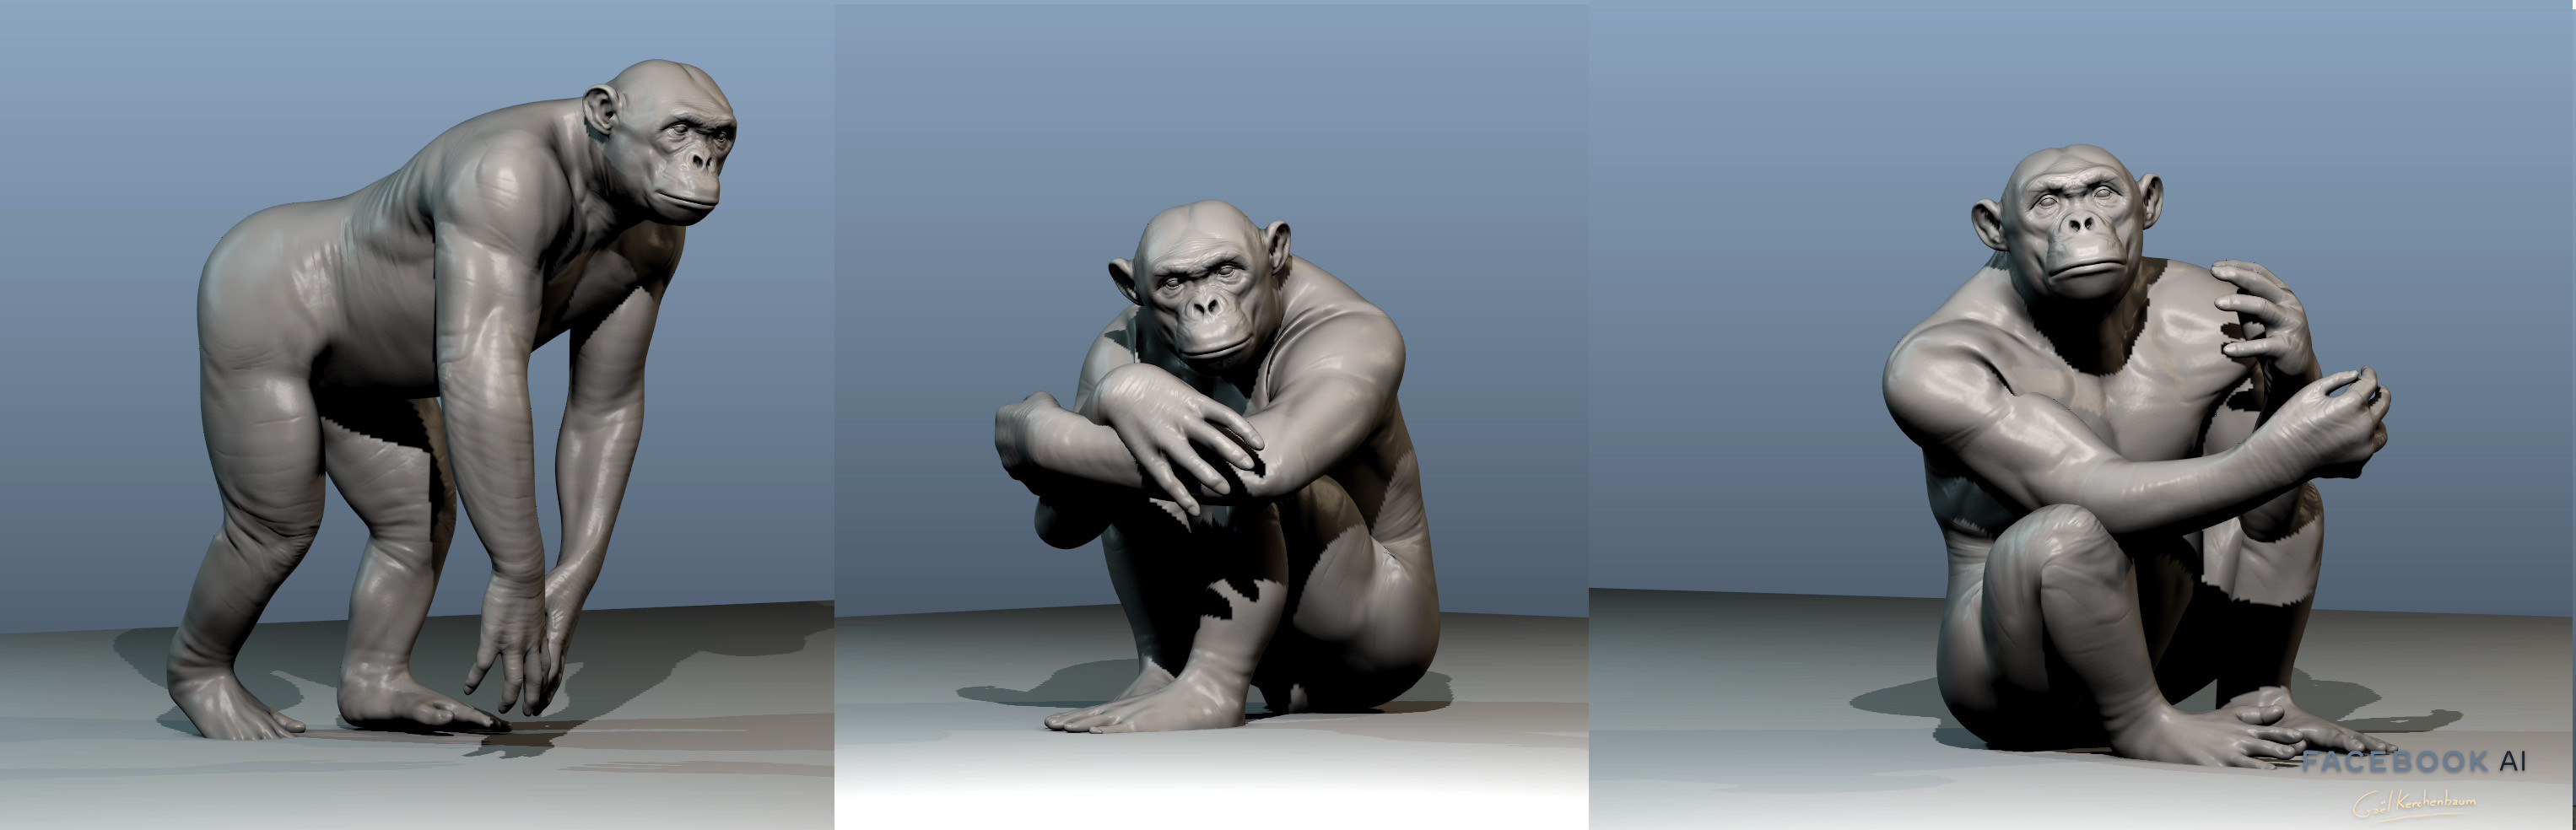 Chimp poses aligned on Data set